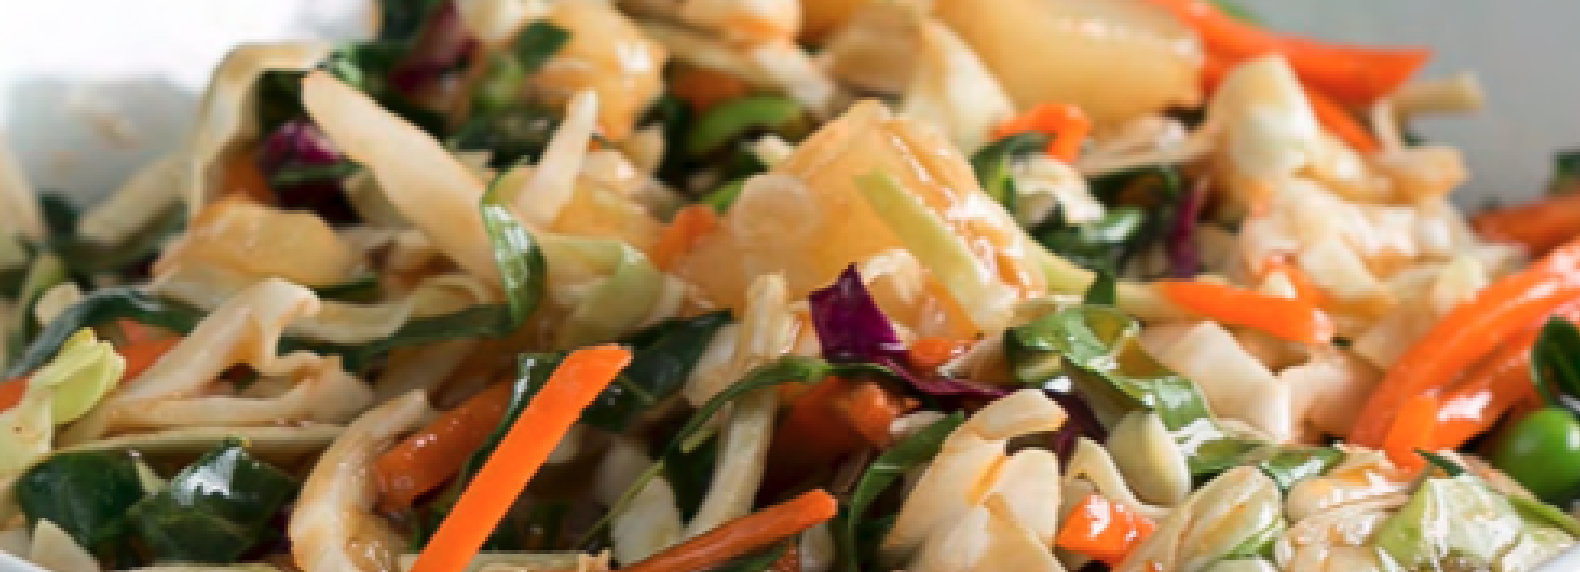 close up of stir fried vegetables